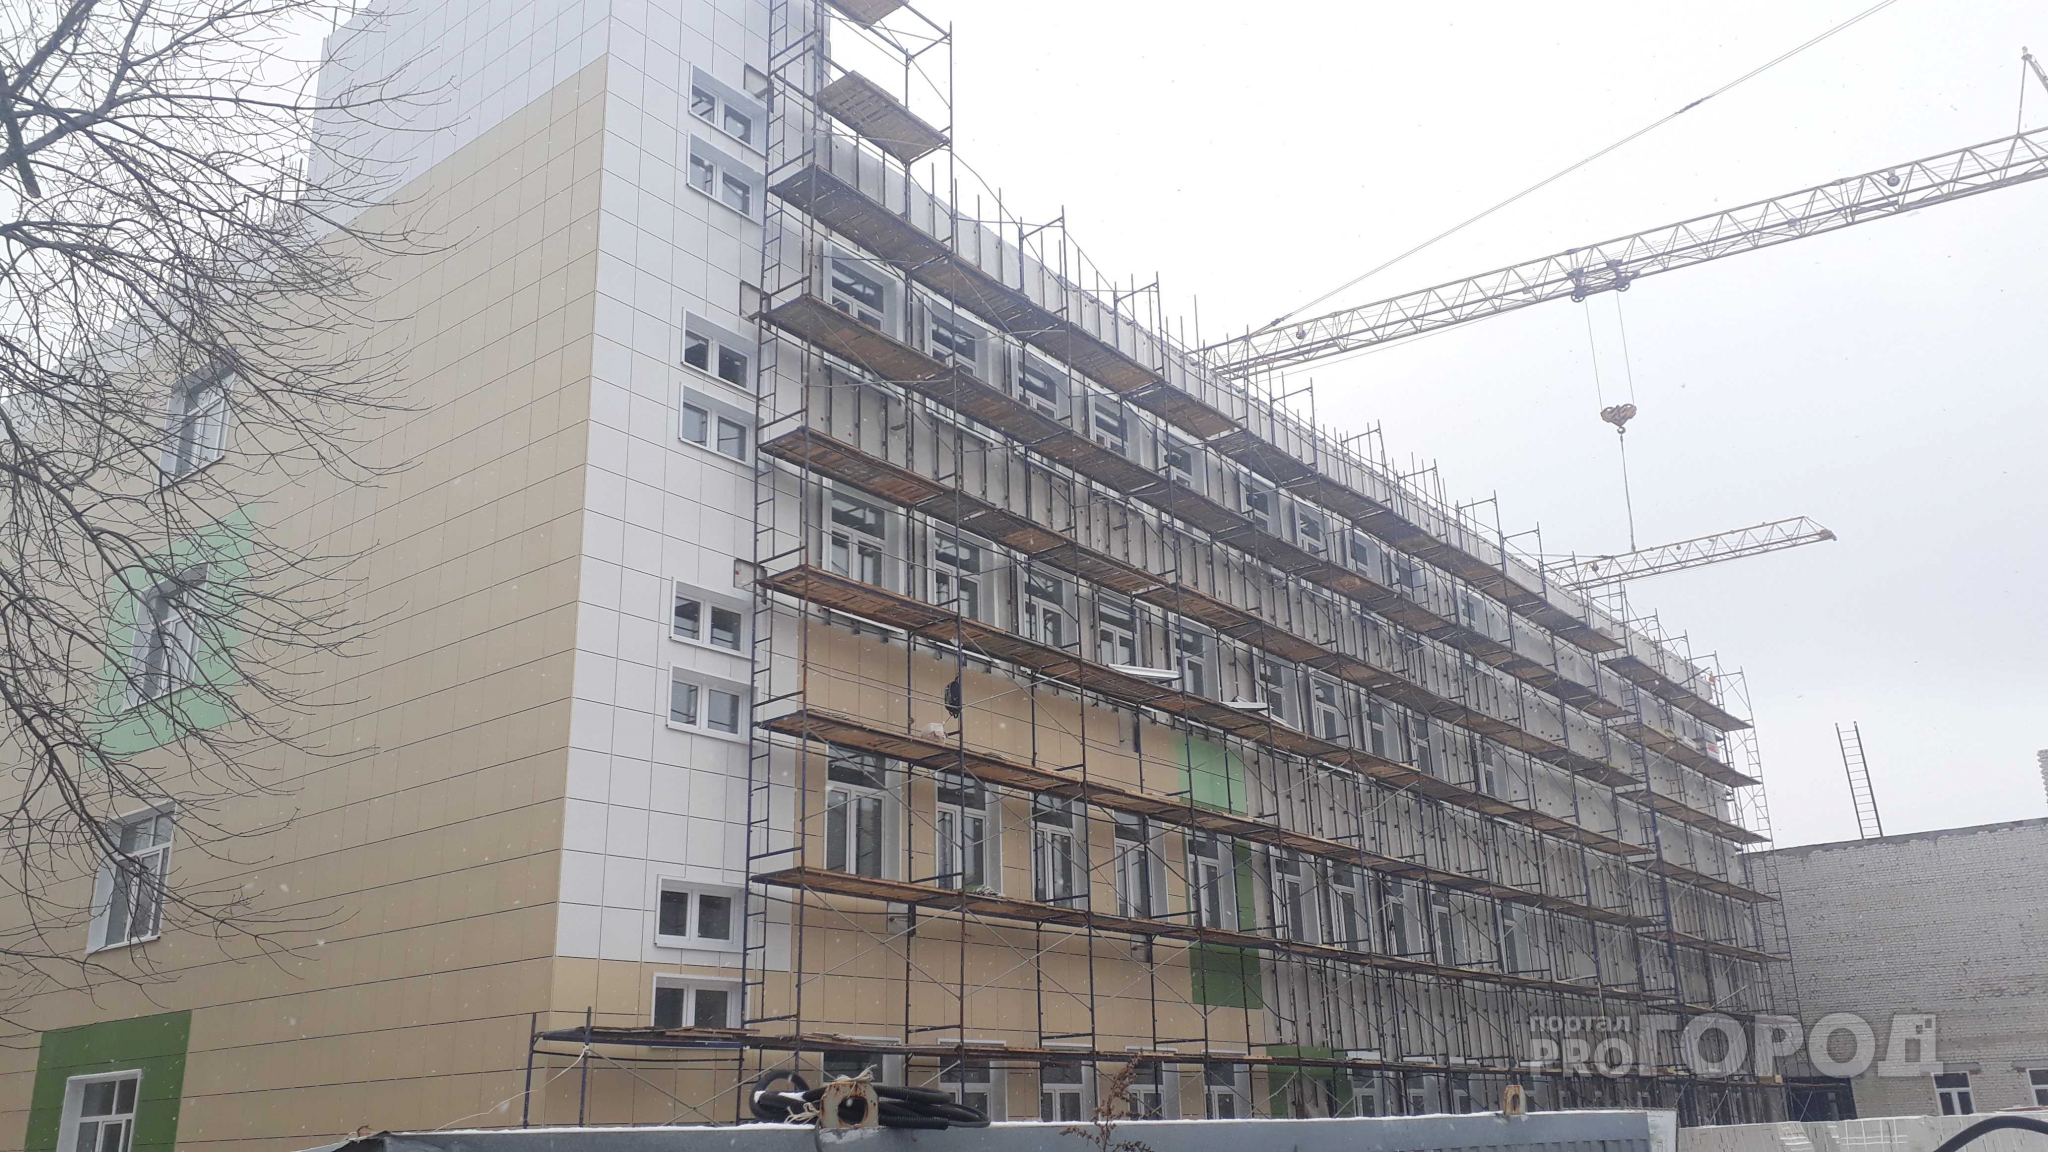 Бегом подавать заявление: в Рязани завершается строительство школы на 1100 мест